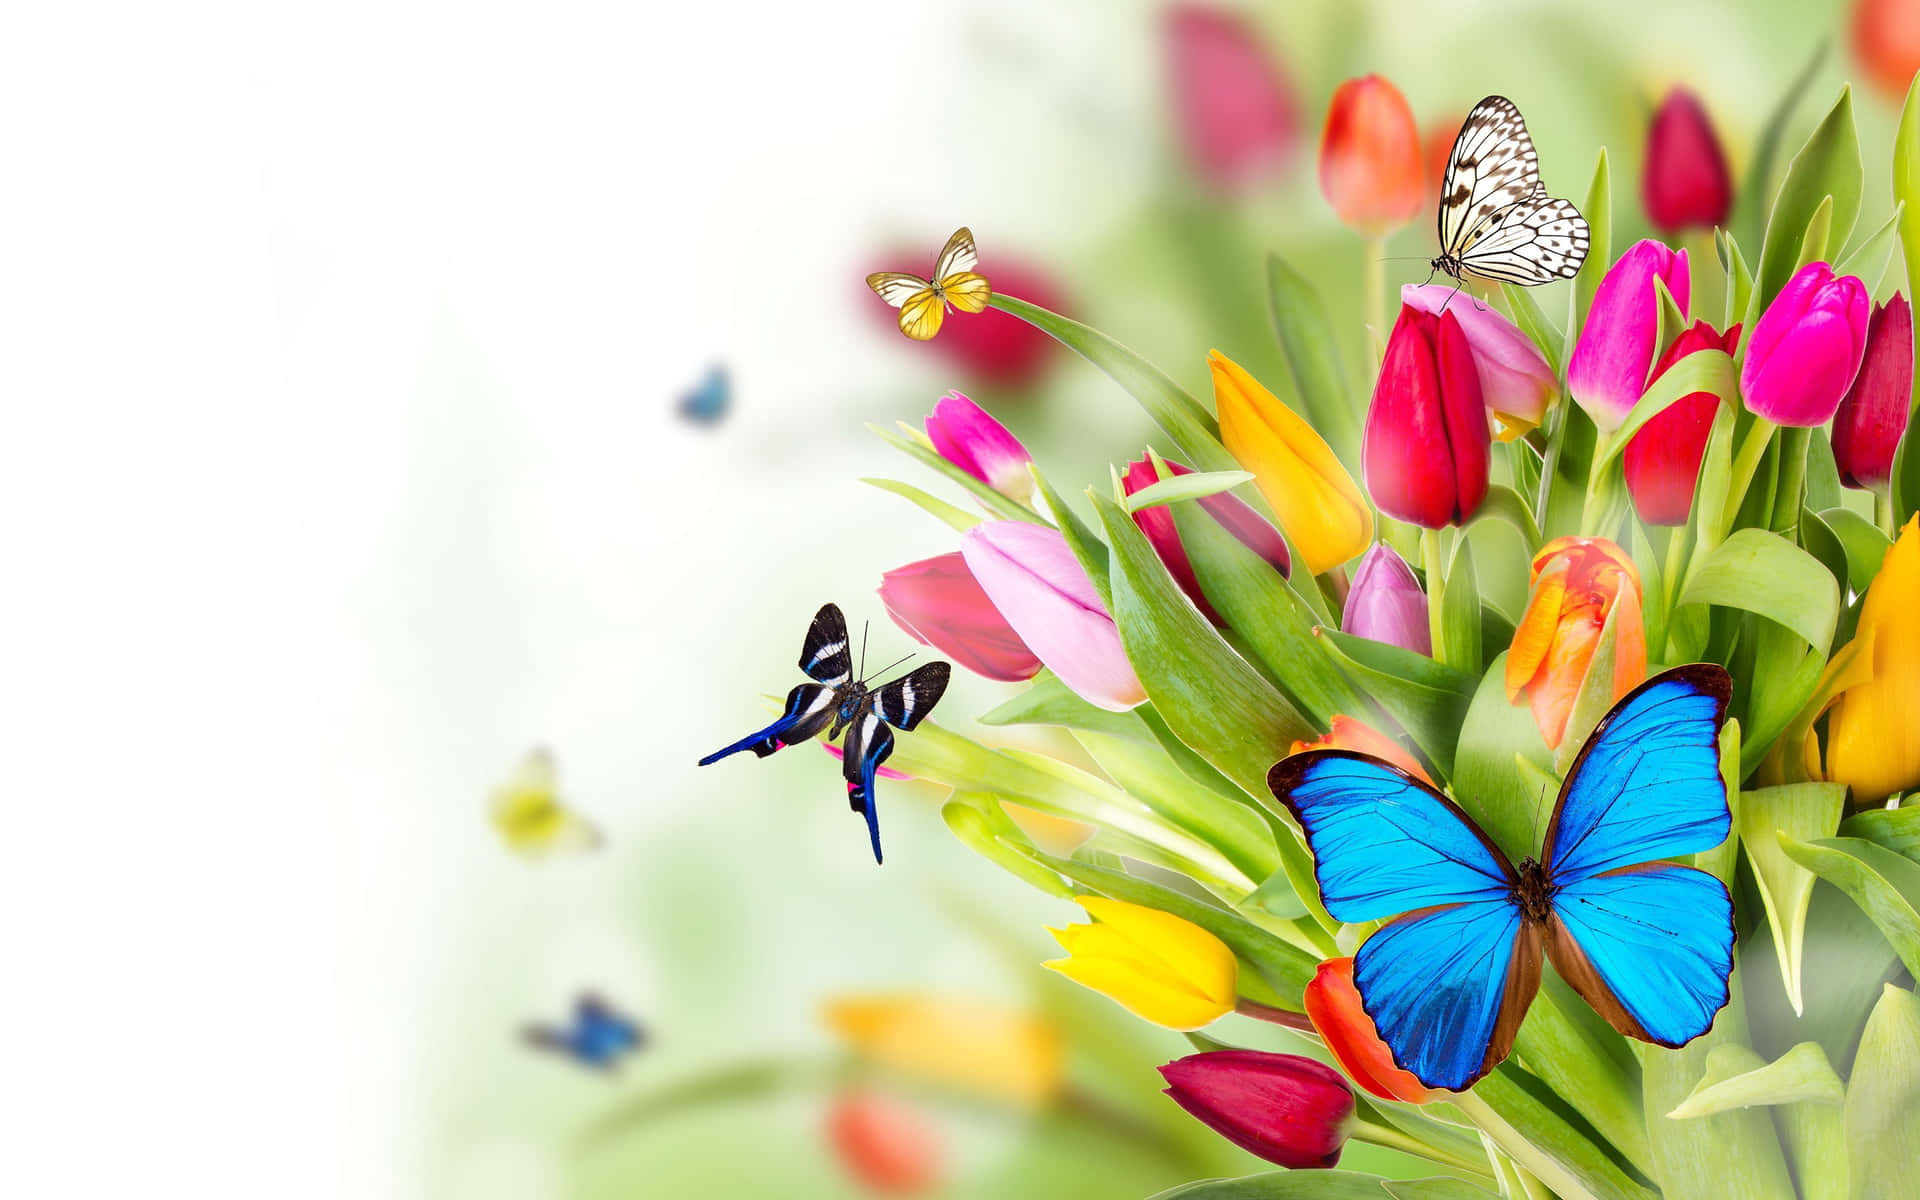 Caption: Enchanting Spring Butterflies in a Blossoming Garden Wallpaper